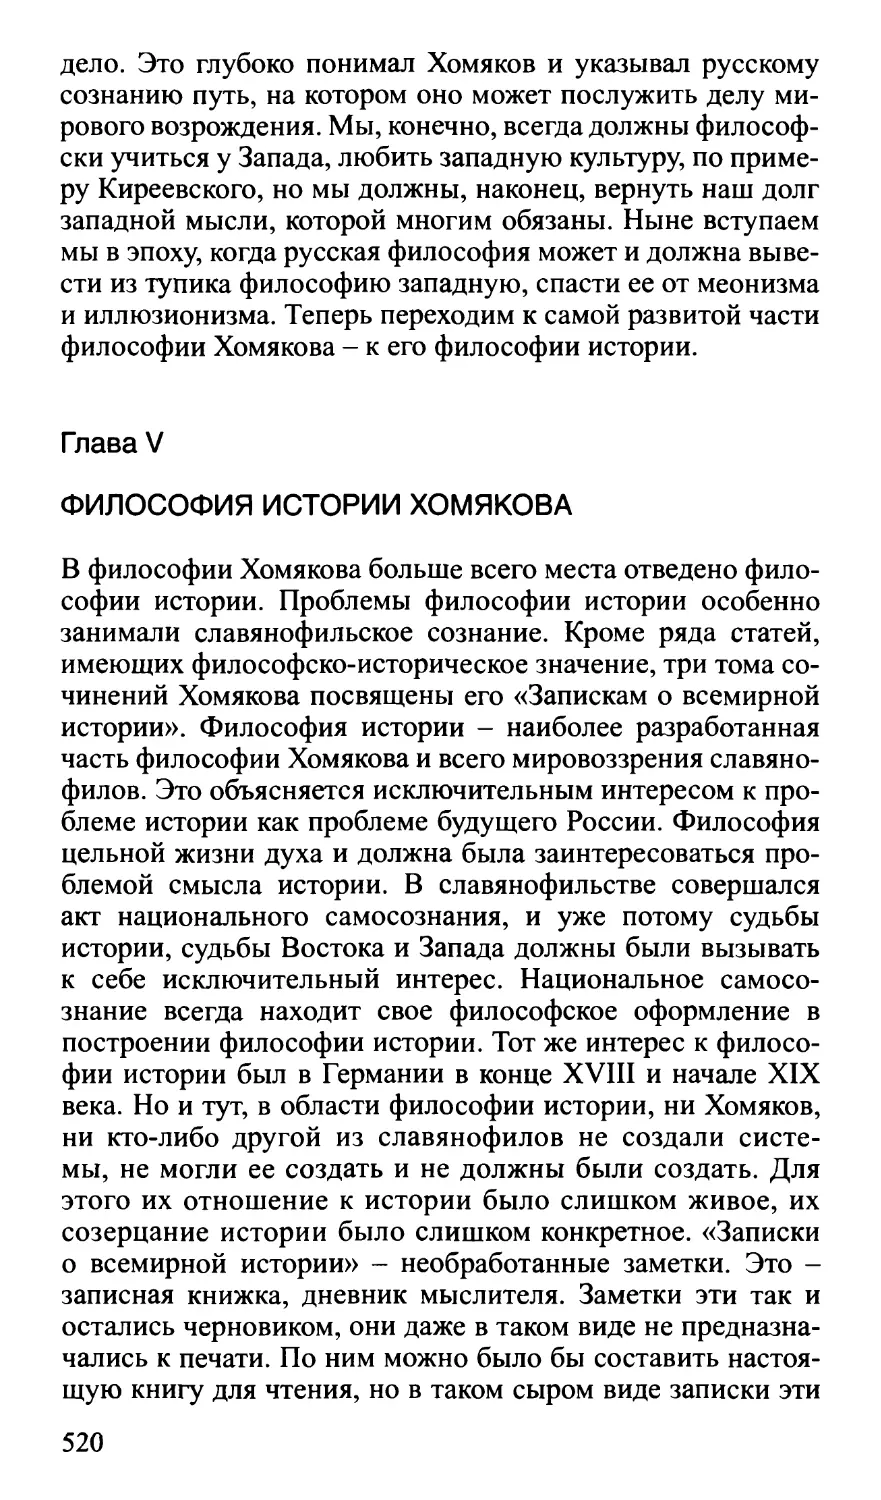 Глава V. Философия истории Хомякова